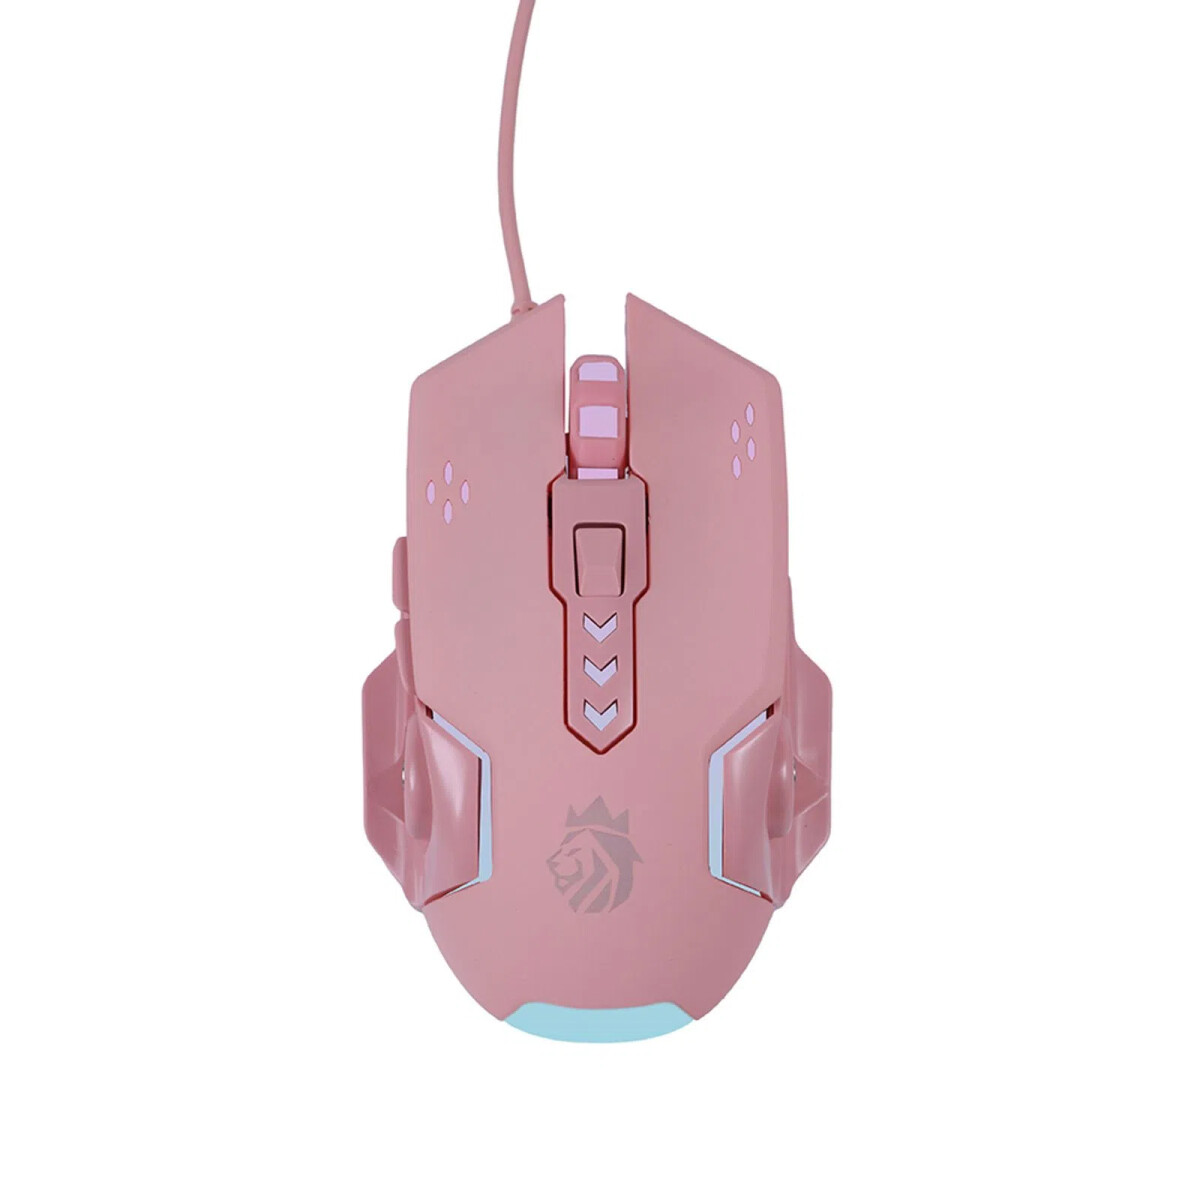 Mouse gamer rosa 